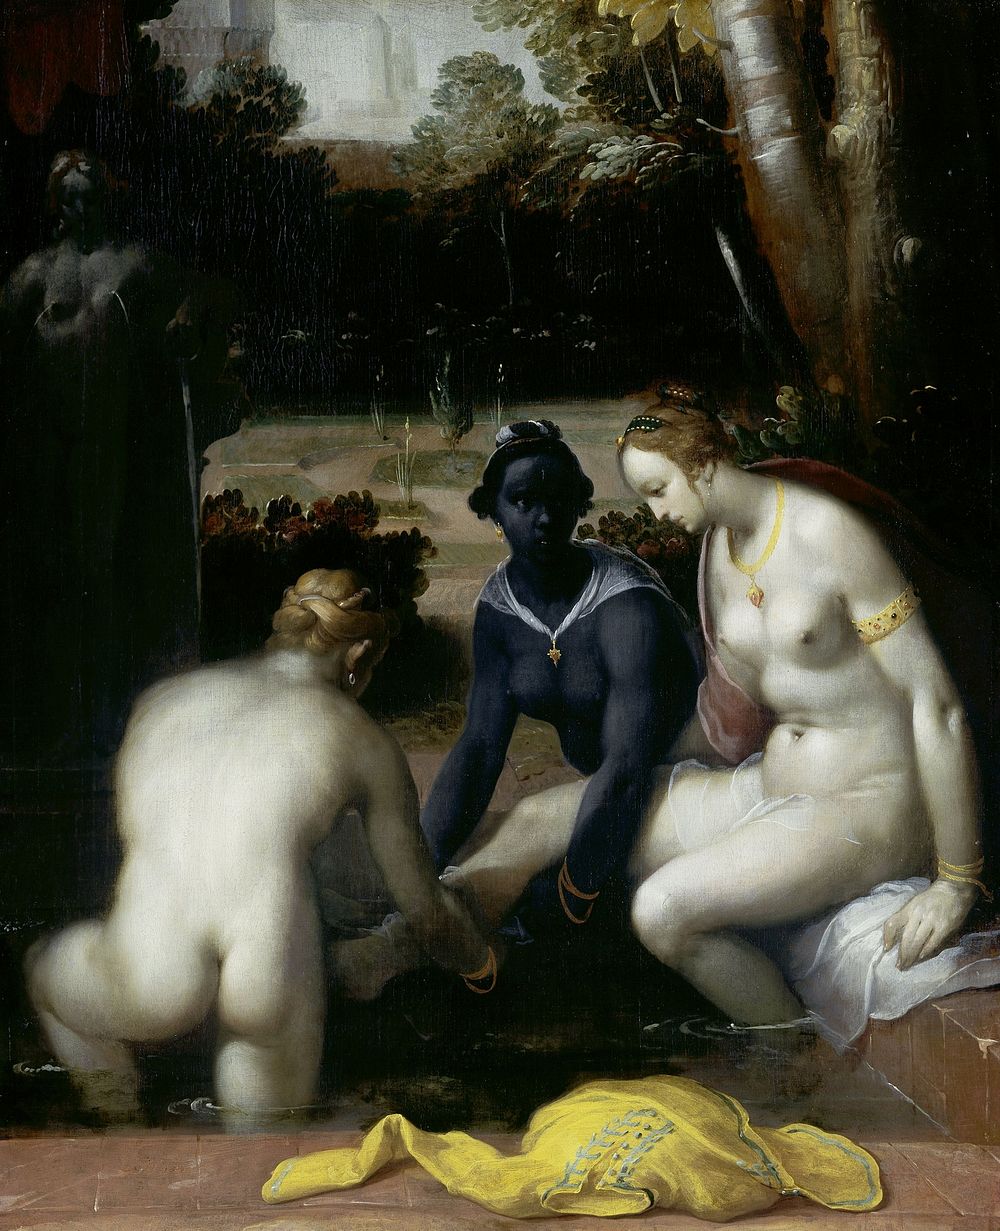 Bathsheba at her Toilet (1594) by Cornelis Cornelisz van Haarlem